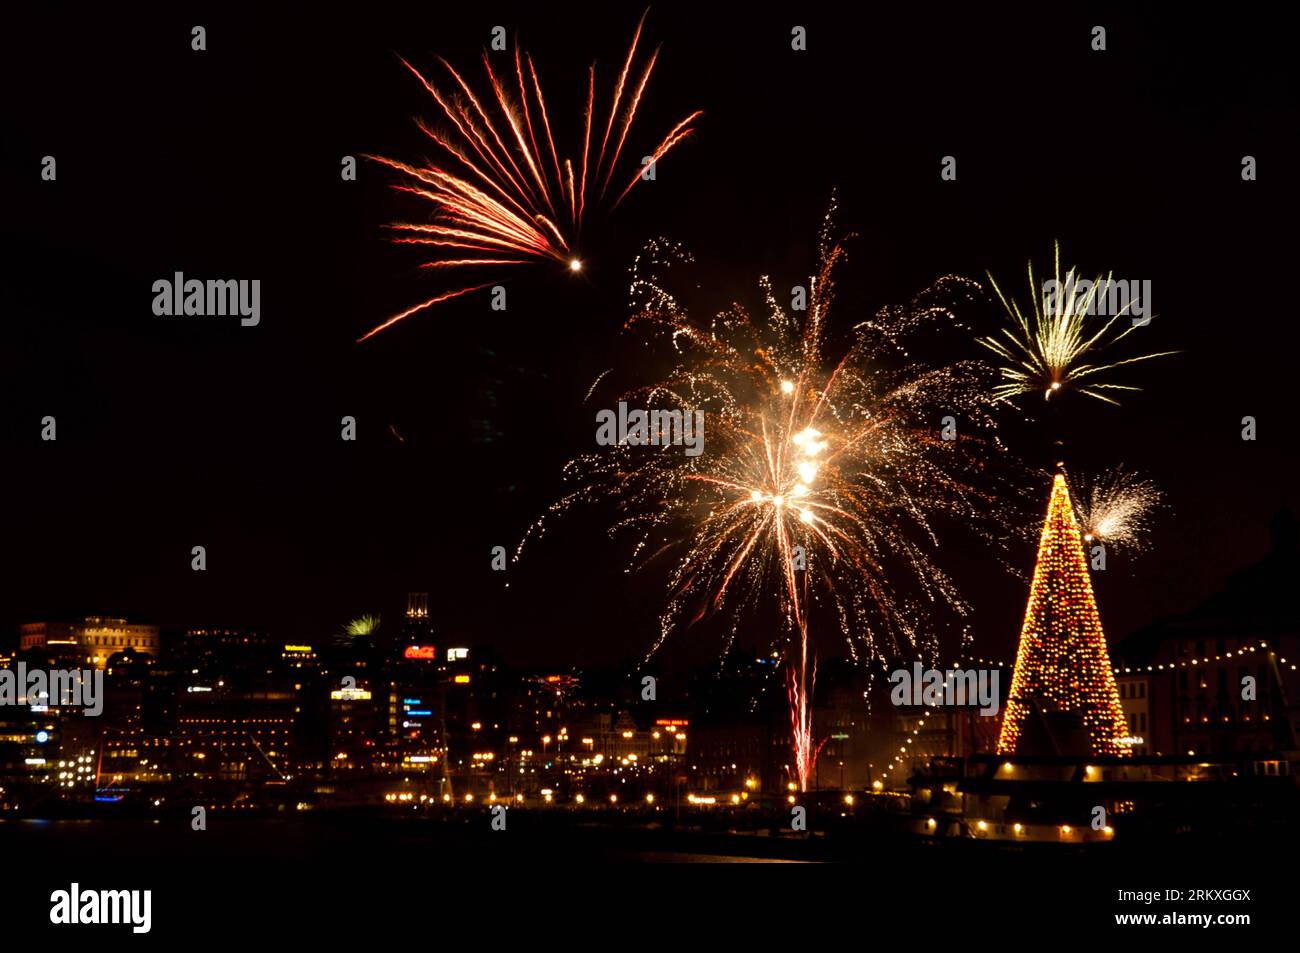 Bildnummer: 58958585  Datum: 01.01.2013  Copyright: imago/Xinhua (130101) -- STOCKHOLM, Jan. 1, 2013 (Xinhua) -- Fireworks explode during New Year celebrations in Stockholm, Sweden, on Jan. 1, 2013. (Xinhua/Liu Yinan) (nxl) SWEDEN-STOCKHOLM-NEW YEAR-FIREWORKS PUBLICATIONxNOTxINxCHN Gesellschaft Silvester Neujahr 2012 2013 Jahreswechsel Feuerwerk xdp x0x 2013 quer premiumd      58958585 Date 01 01 2013 Copyright Imago XINHUA  Stockholm Jan 1 2013 XINHUA Fireworks explode during New Year celebrations in Stockholm Sweden ON Jan 1 2013 XINHUA Liu Yinan nxl Sweden Stockholm New Year Fireworks PUBLI Stock Photo